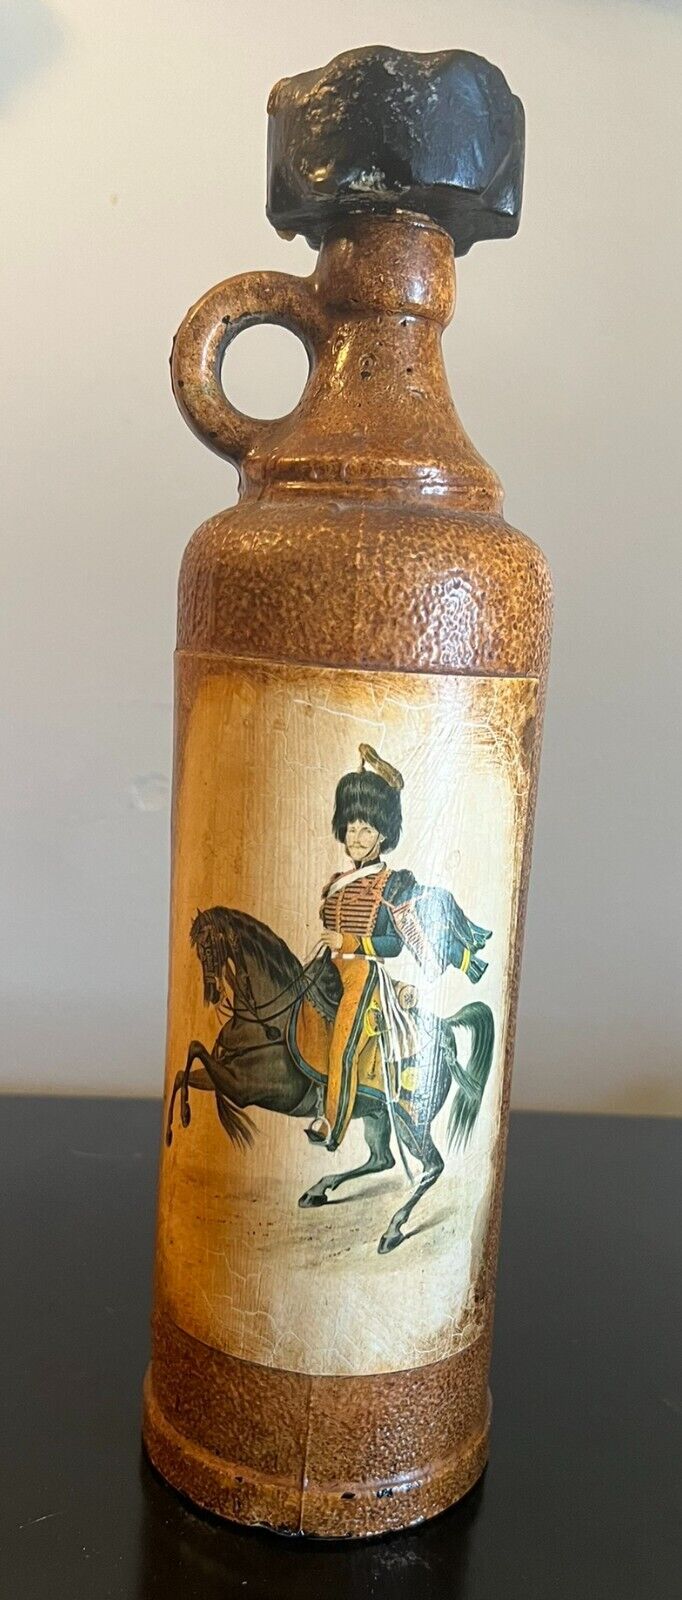 Vintage Antique Spanish Decanter Bottle Jug Soldier on Horseback 